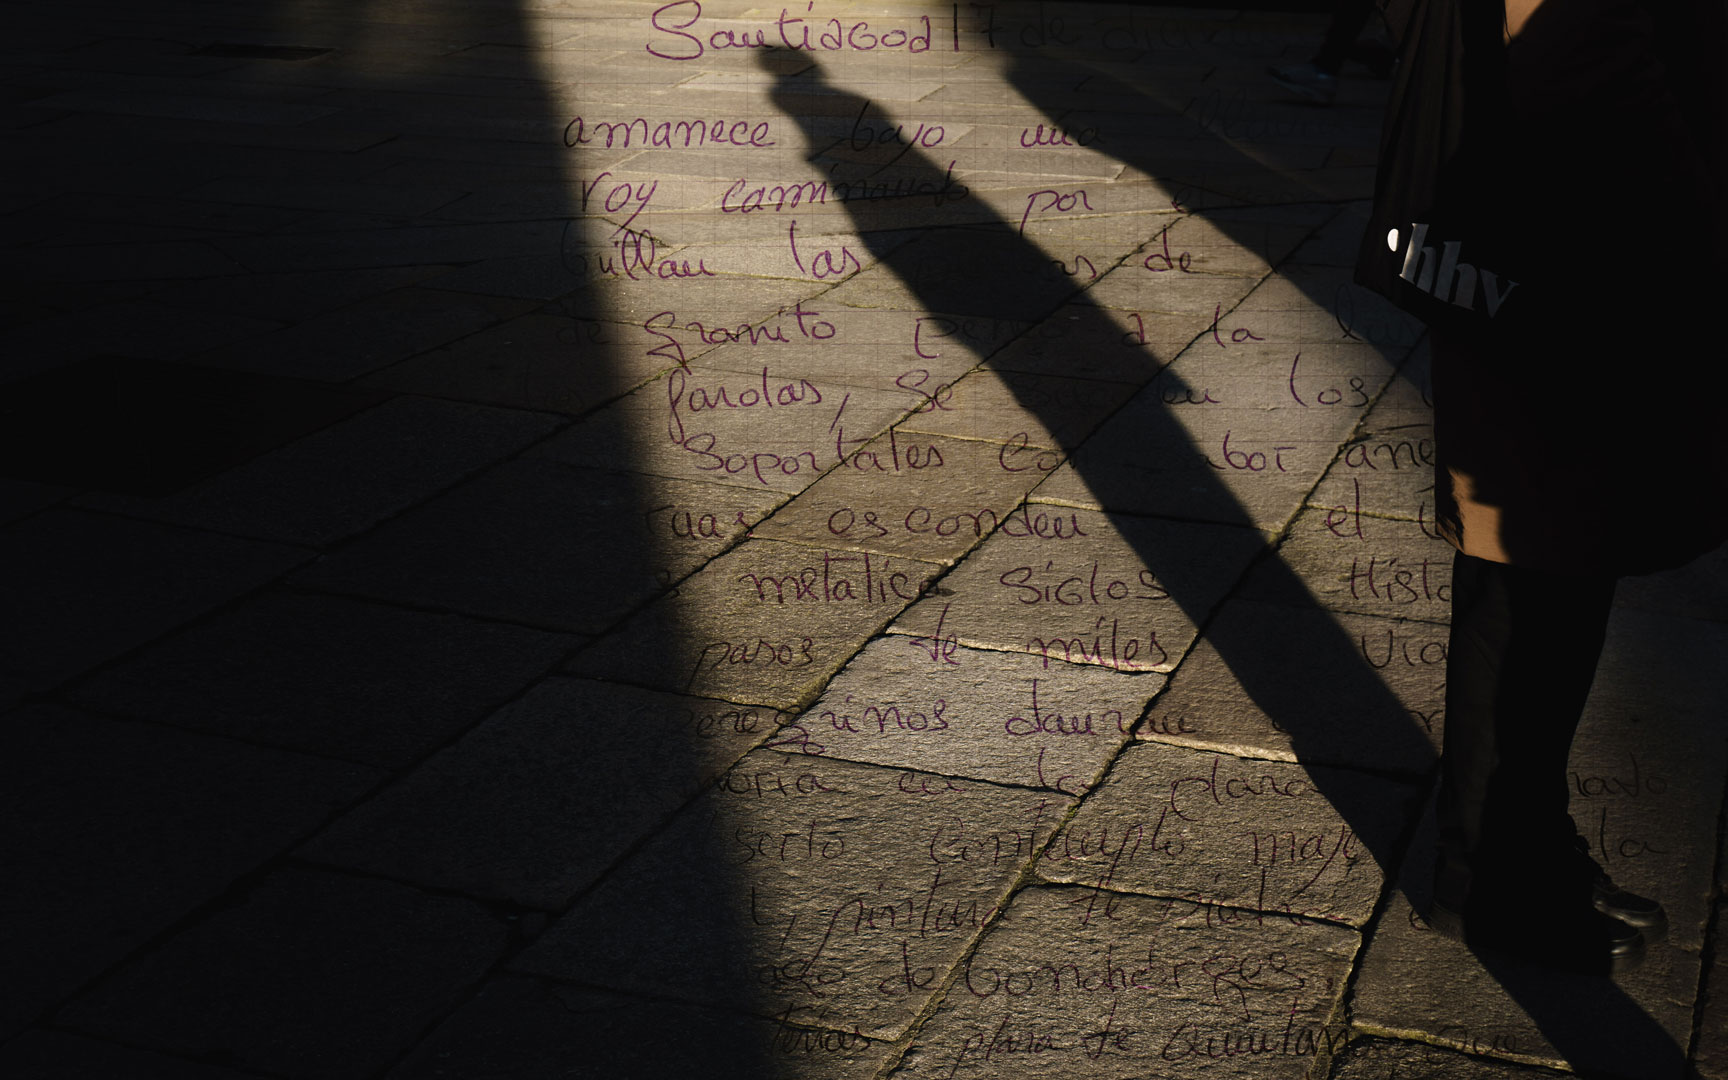 Composición fotográfica de una carta escrita a mano sobre el plano con sombra de persona.